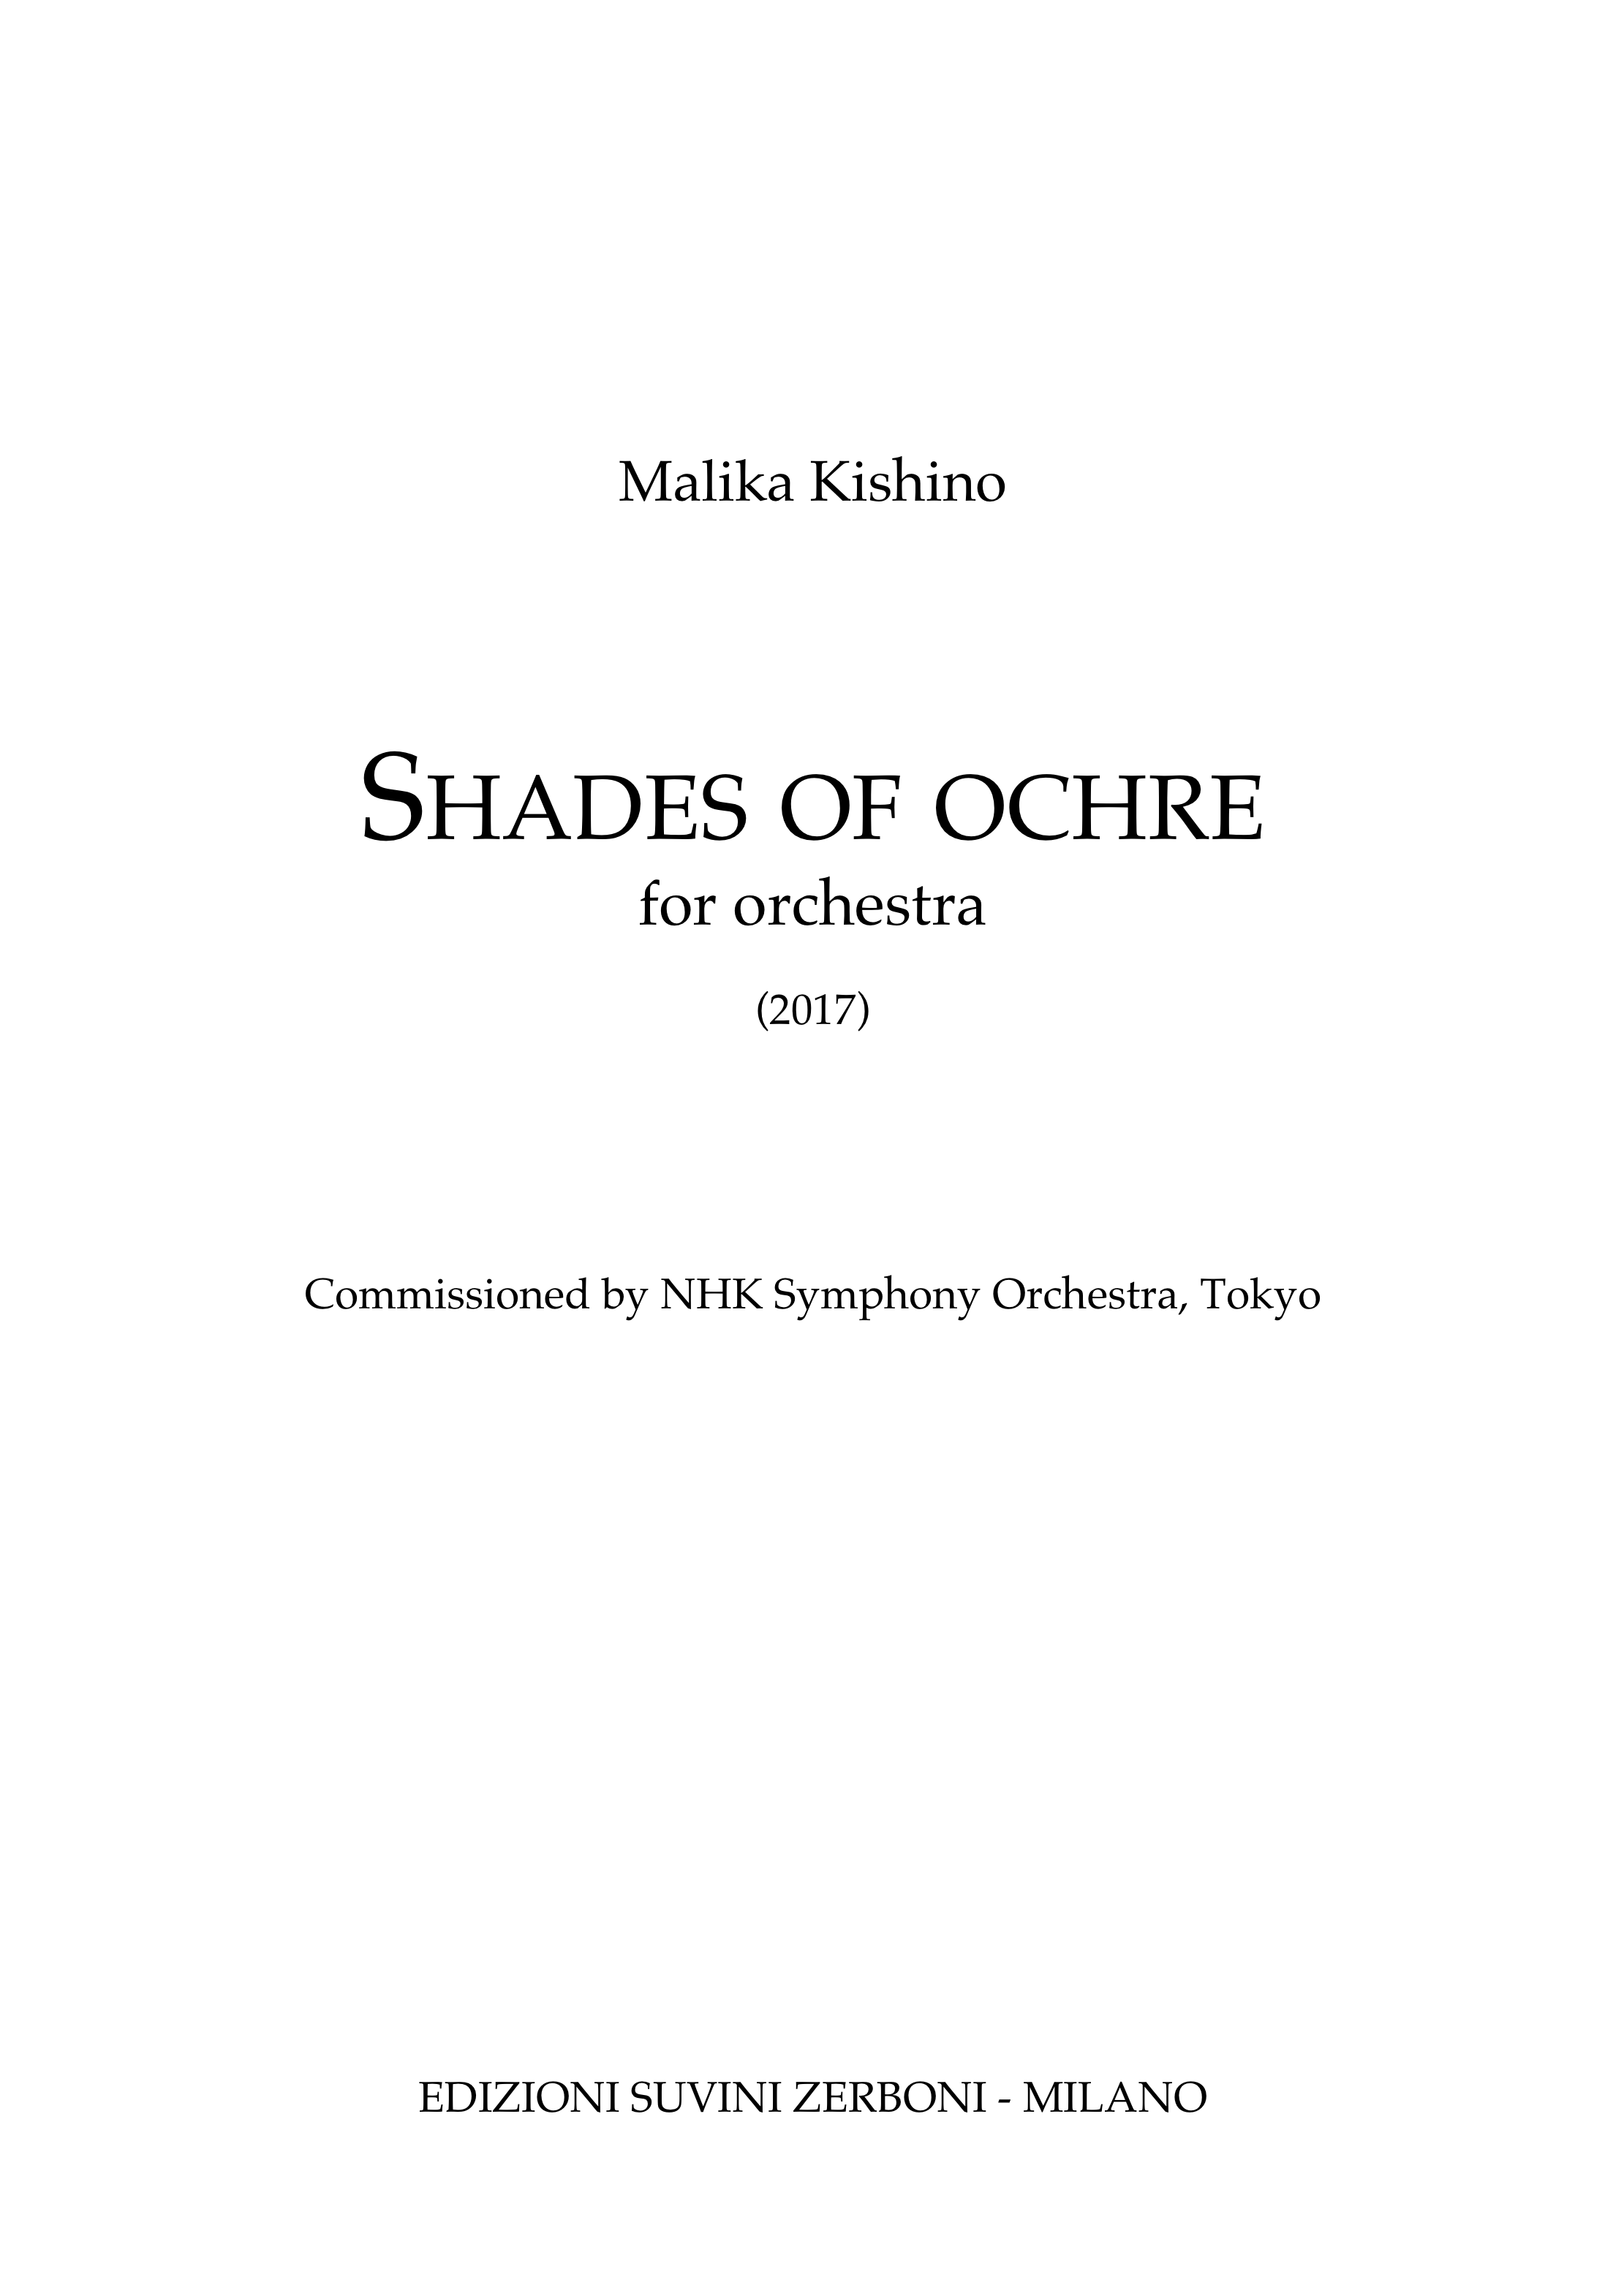 Shades of Ochre_Kishino 1